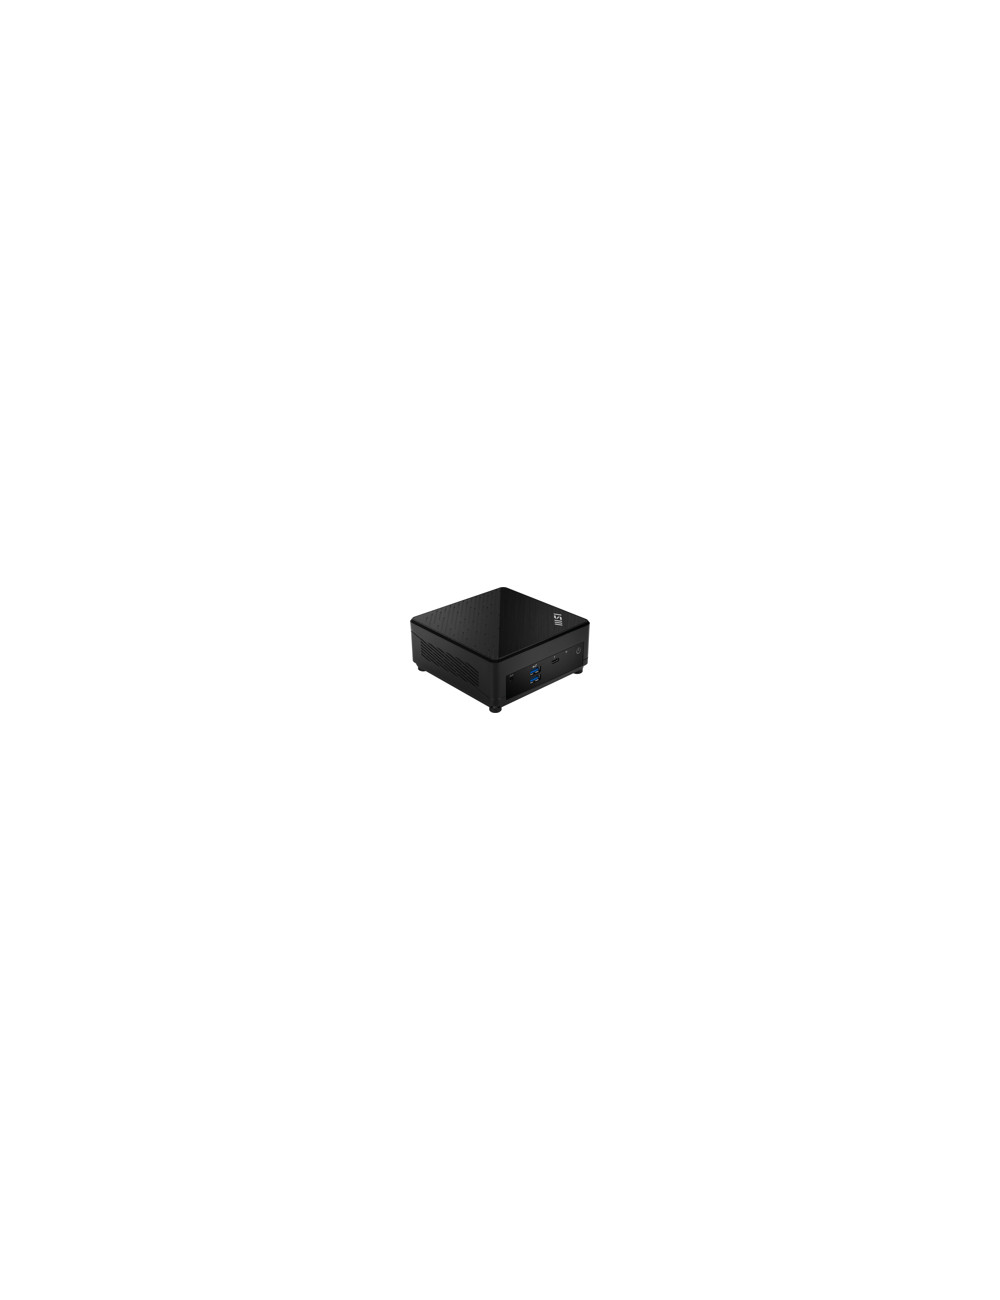 MSI Cubi 5 12M-001EU i7-1255U 2x8GB